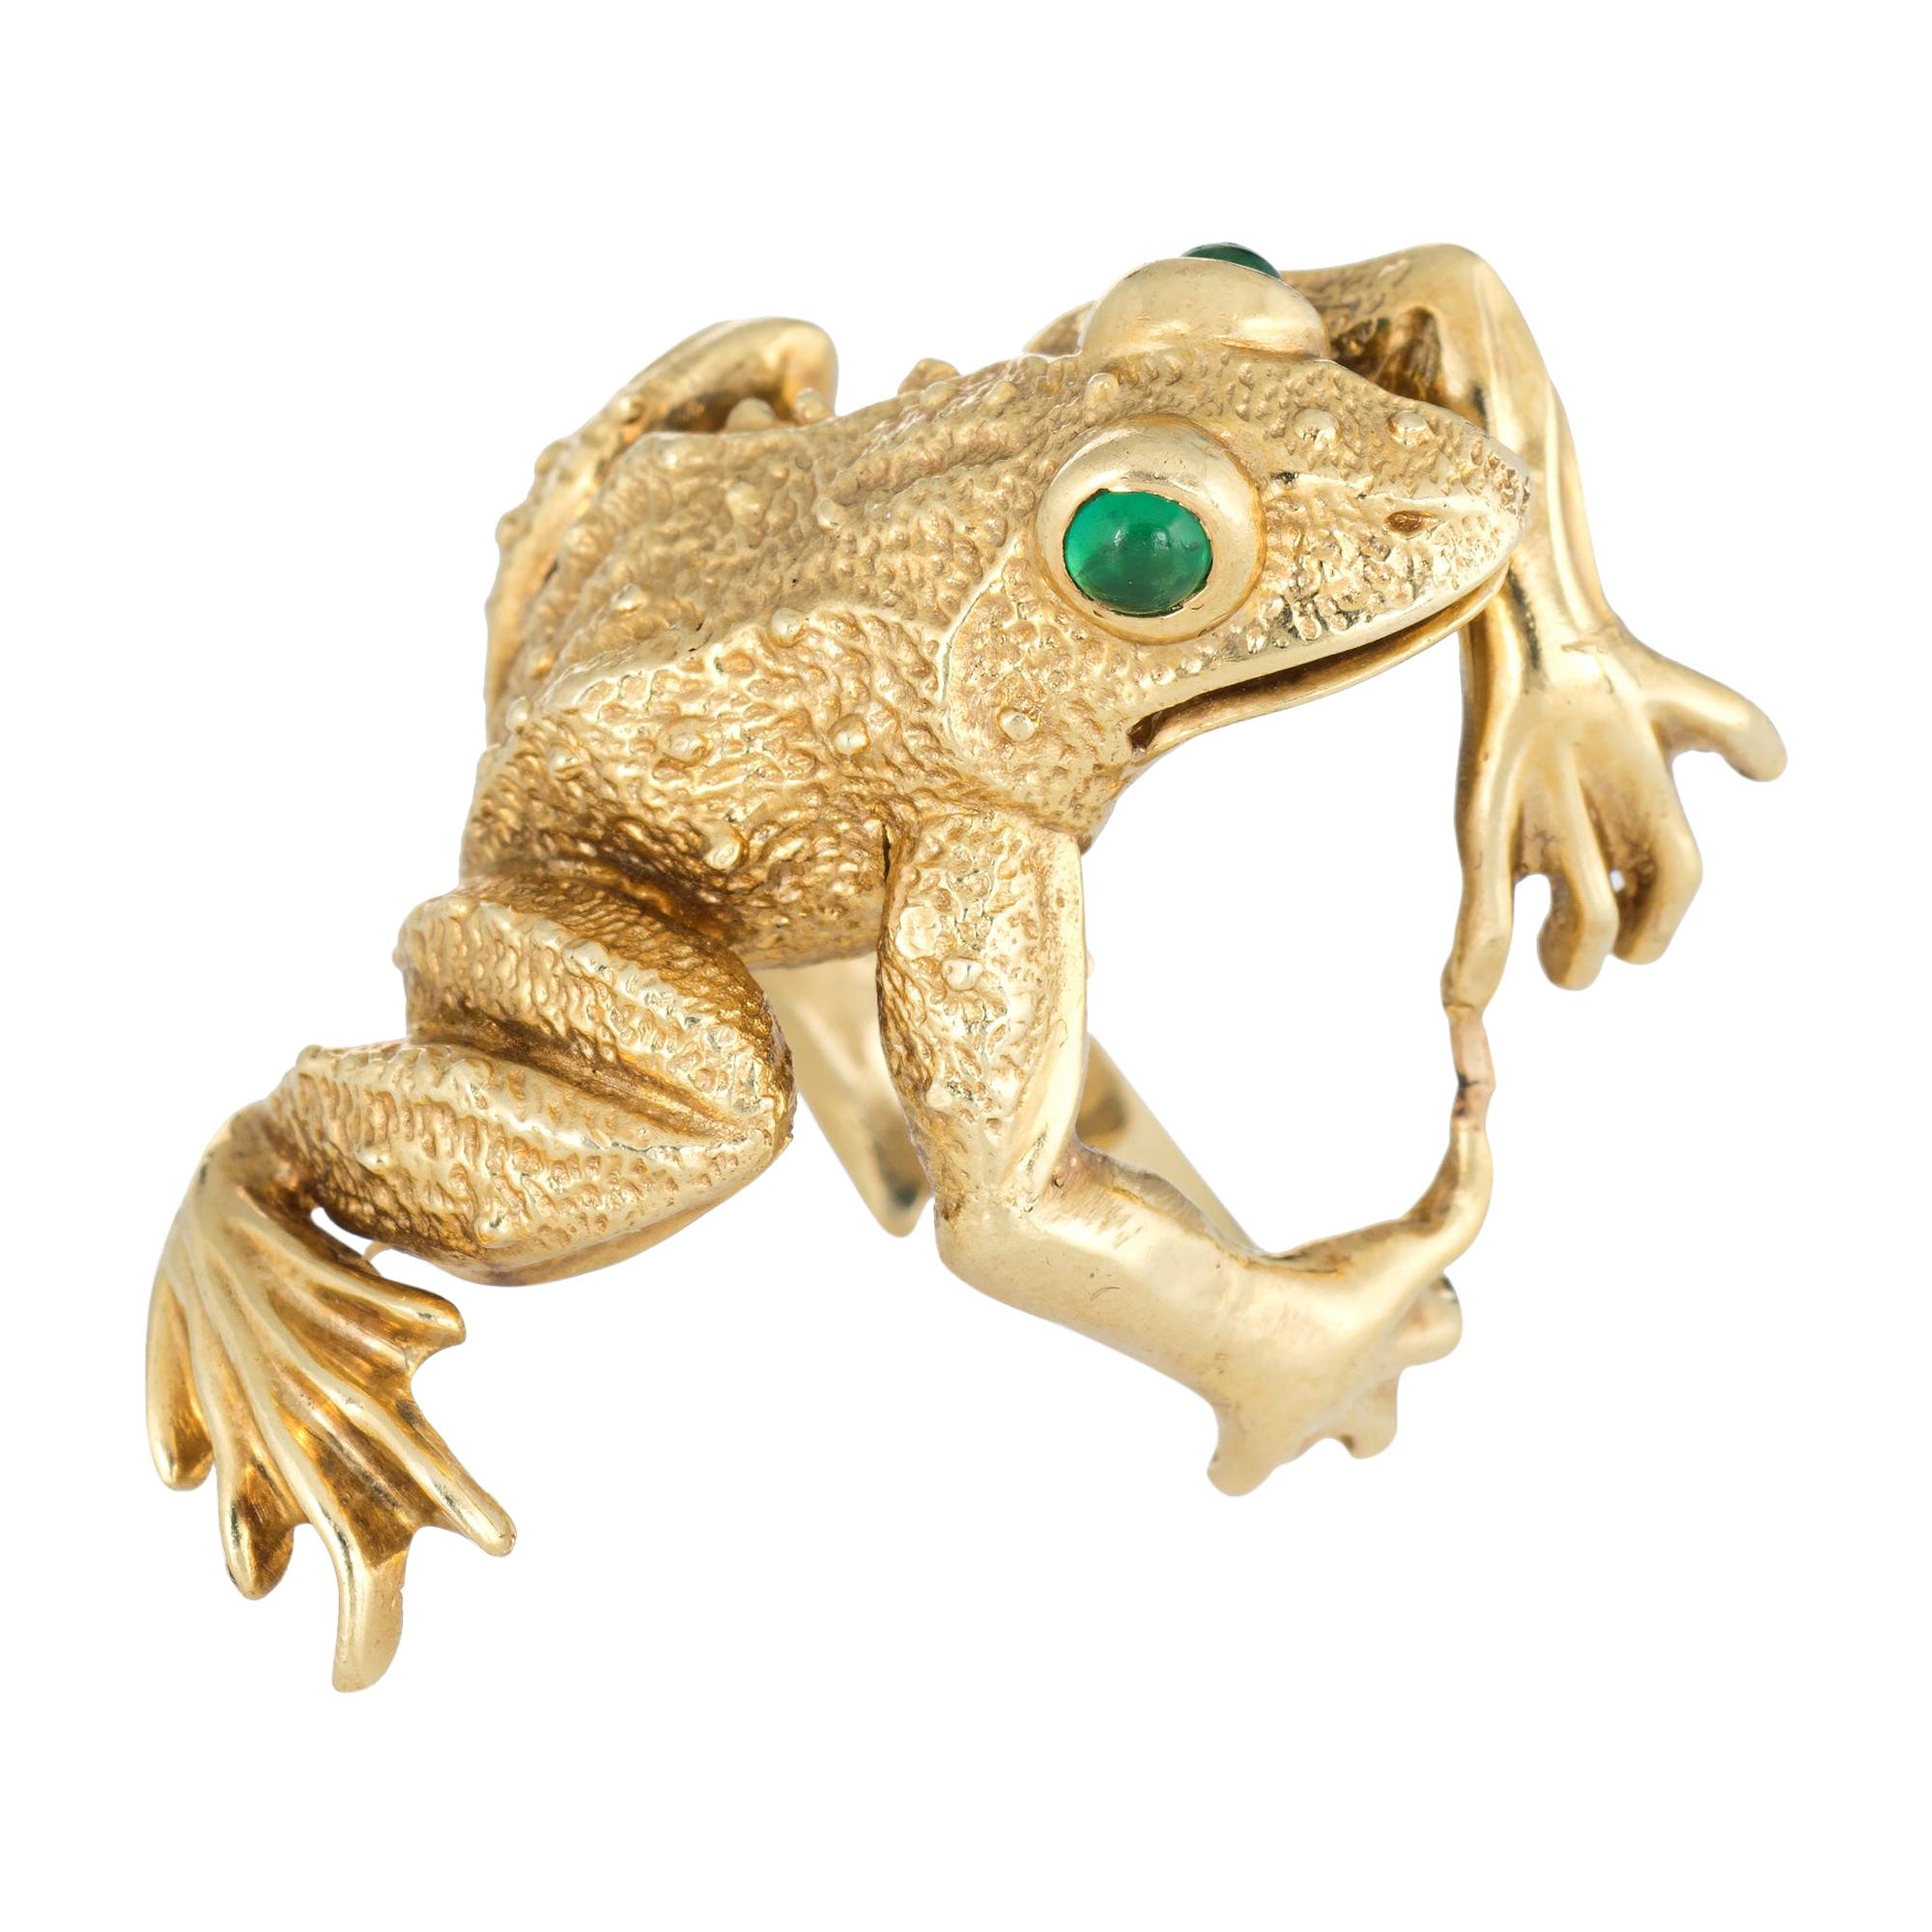 Kurt Wayne Large Frog Ring Vintage 18 Karat Yellow Gold Green Eyes ...